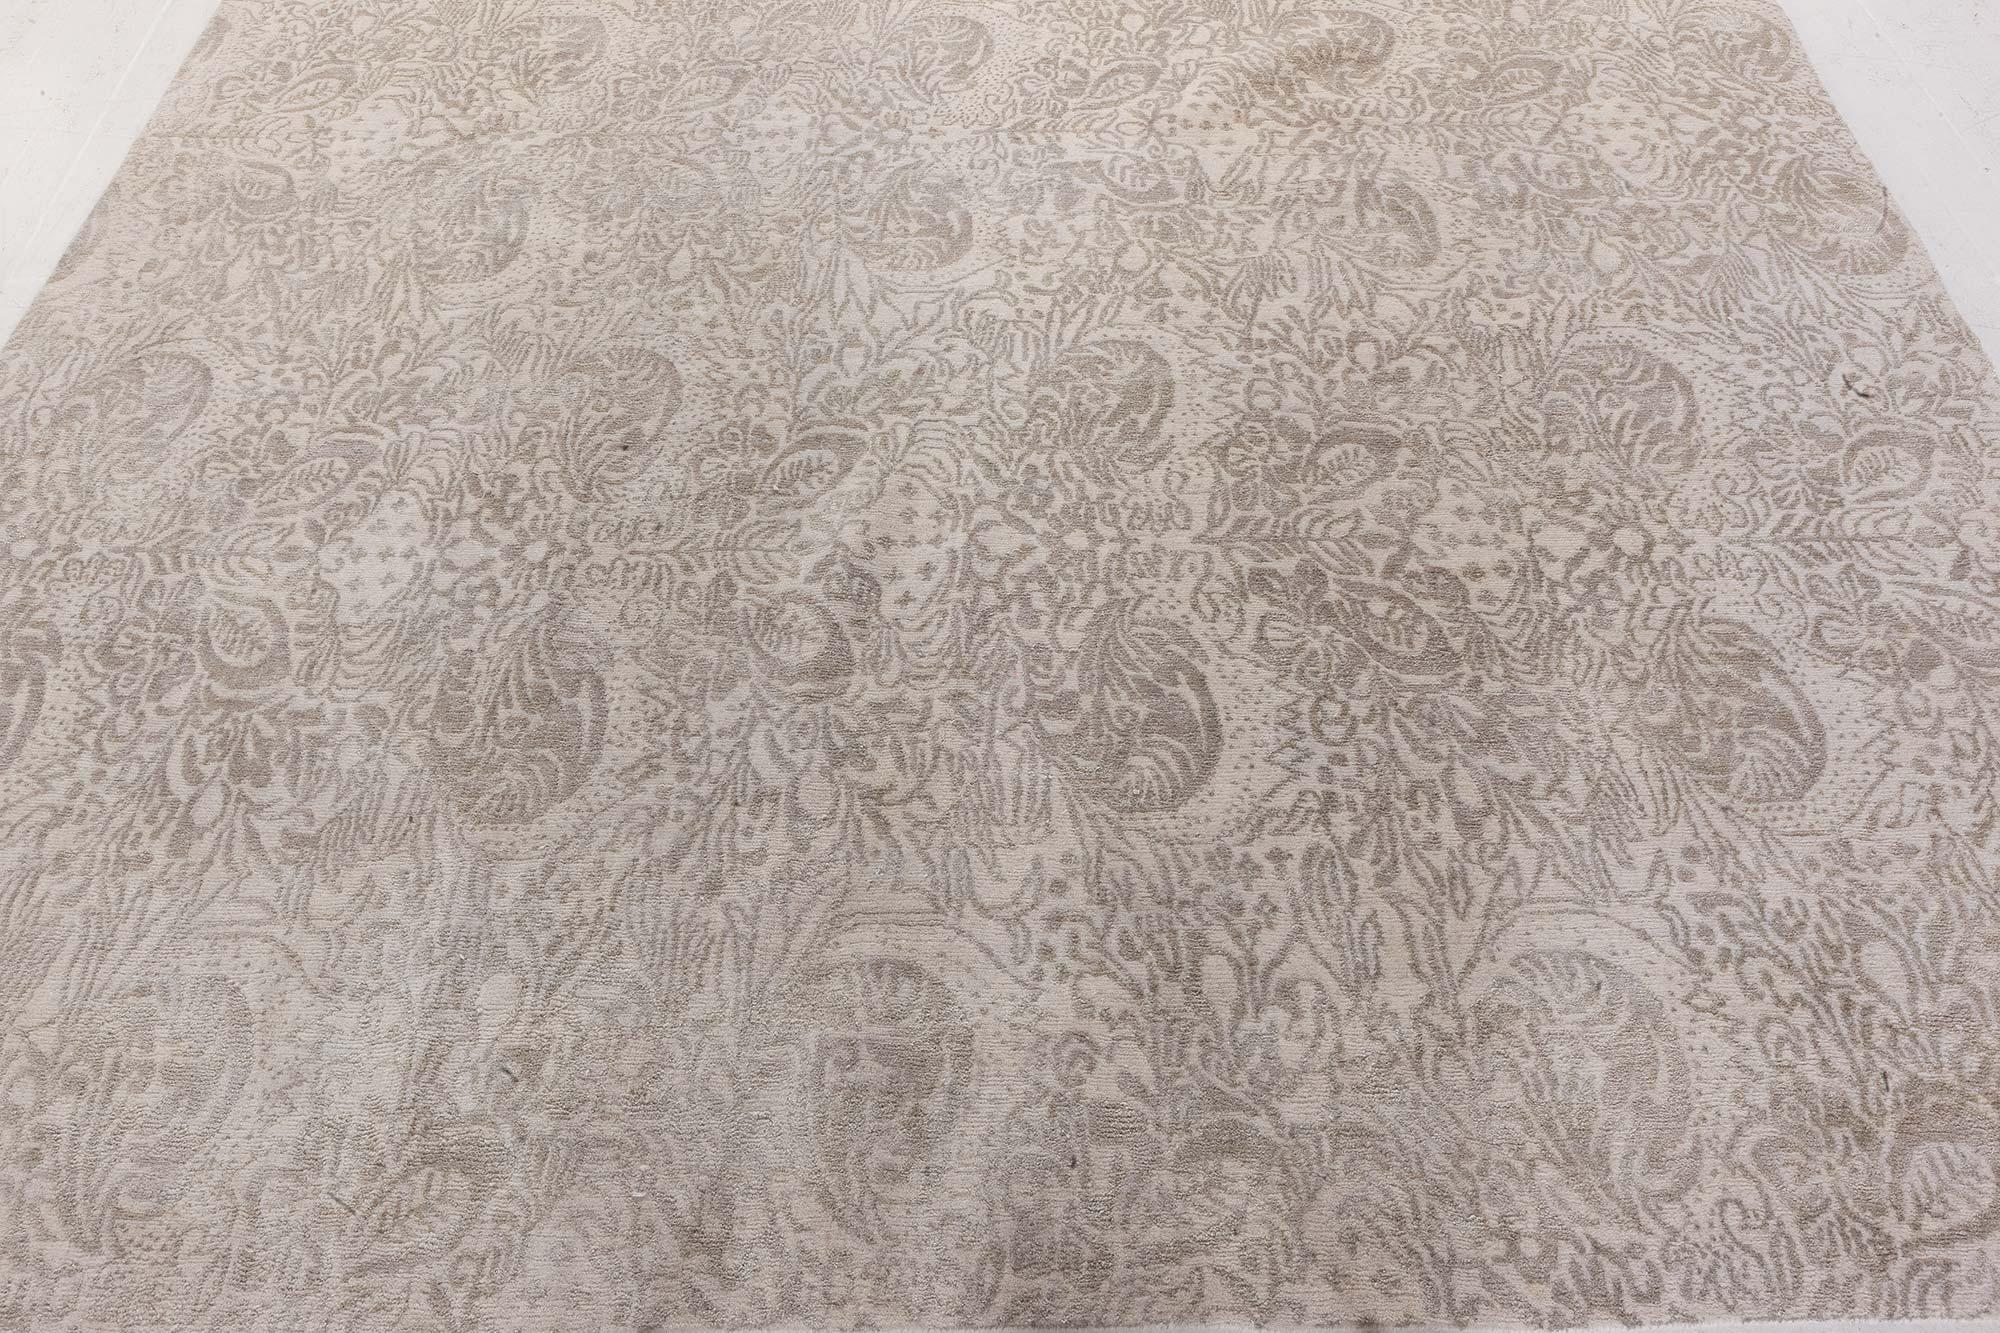 Traditioneller, inspirierter Teppich von Doris Leslie Blau
Größe: 8'0